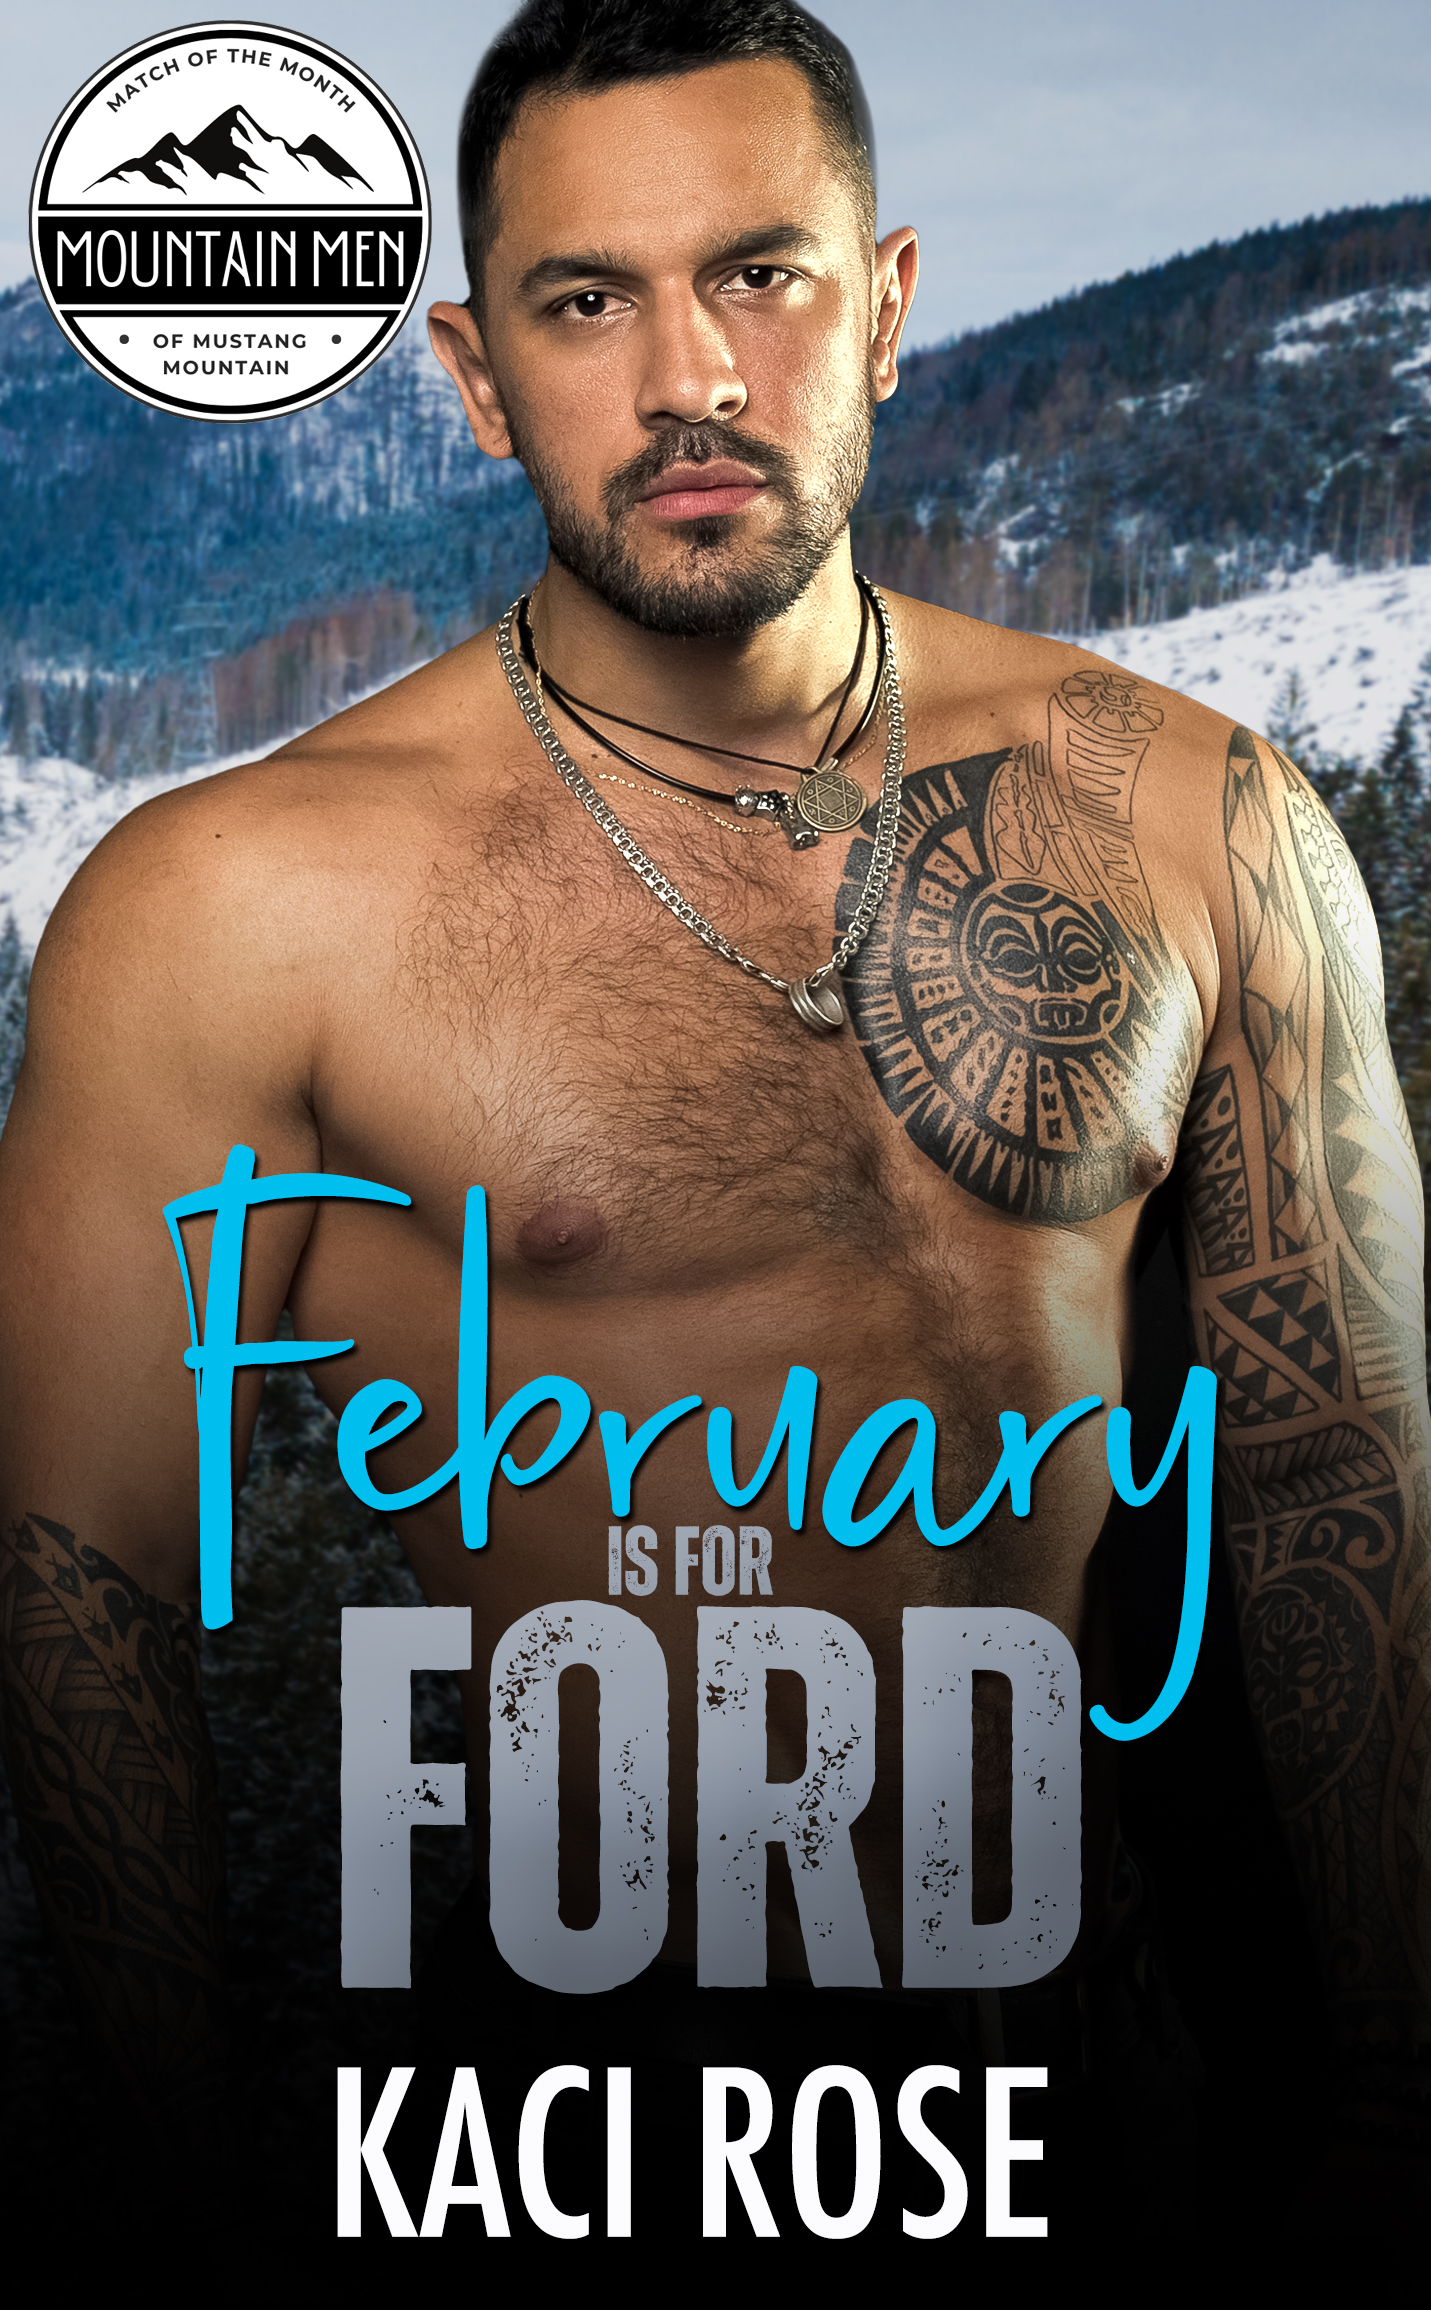 2. Feb Ford